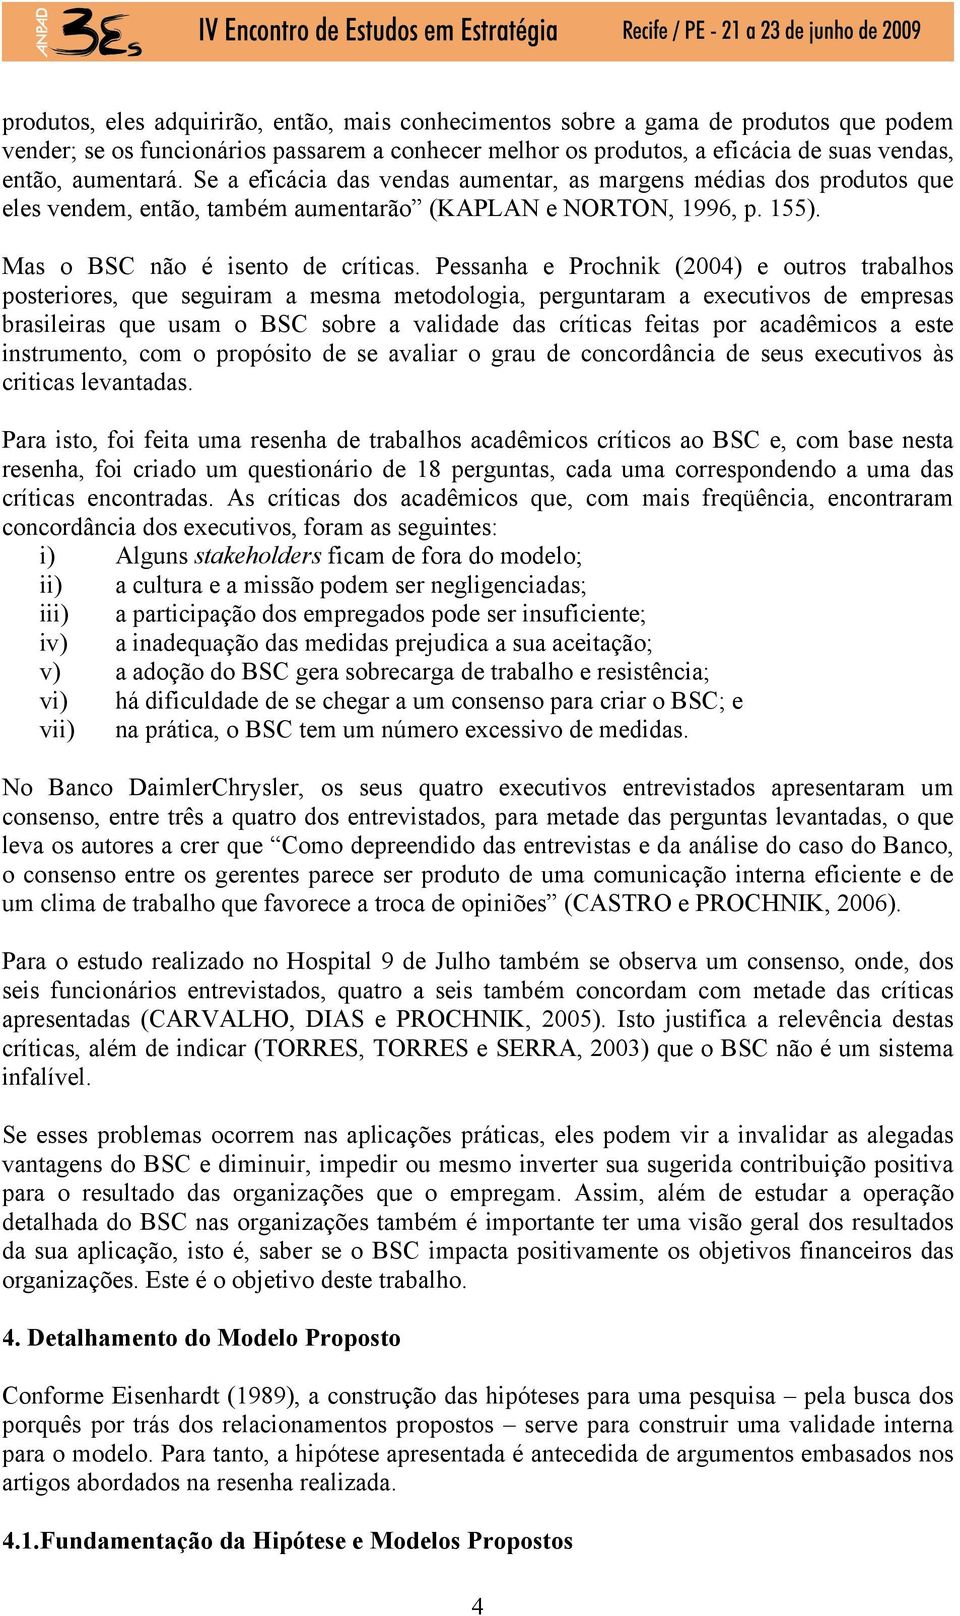 Pessanha e Prochnik (2004) e outros trabalhos posteriores, que seguiram a mesma metodologia, perguntaram a executivos de empresas brasileiras que usam o BSC sobre a validade das críticas feitas por